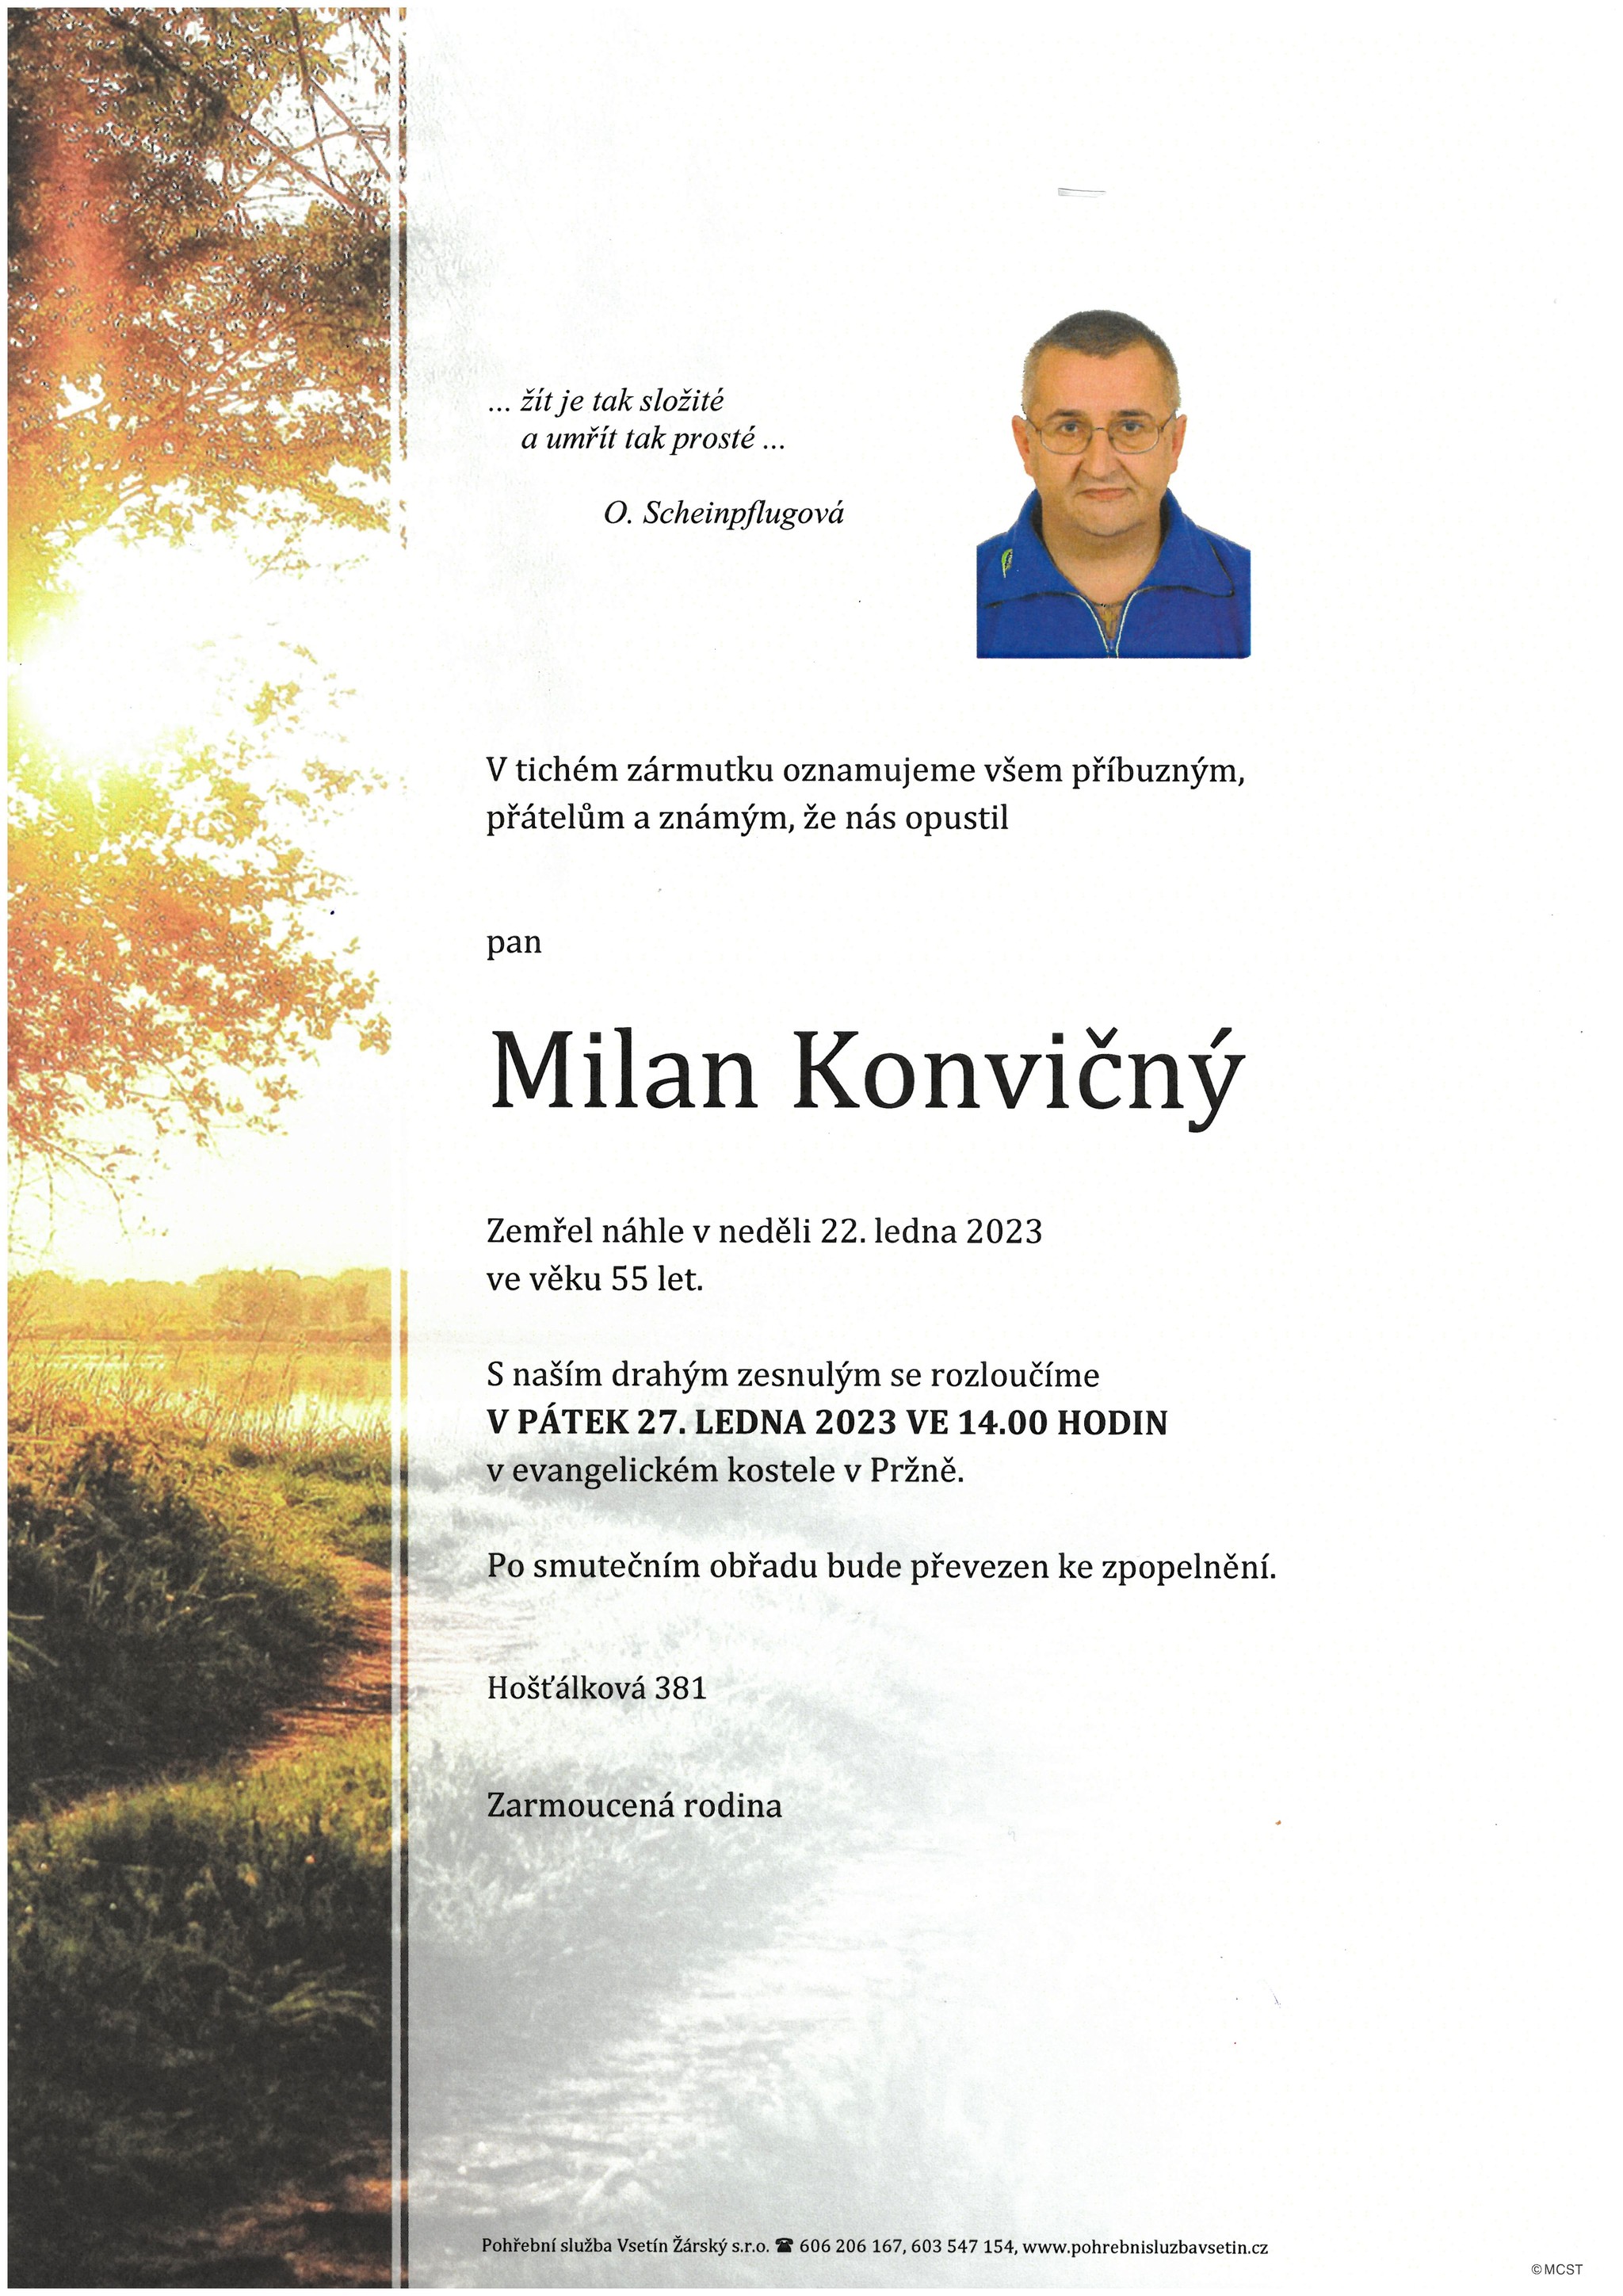 Milan Konvičný